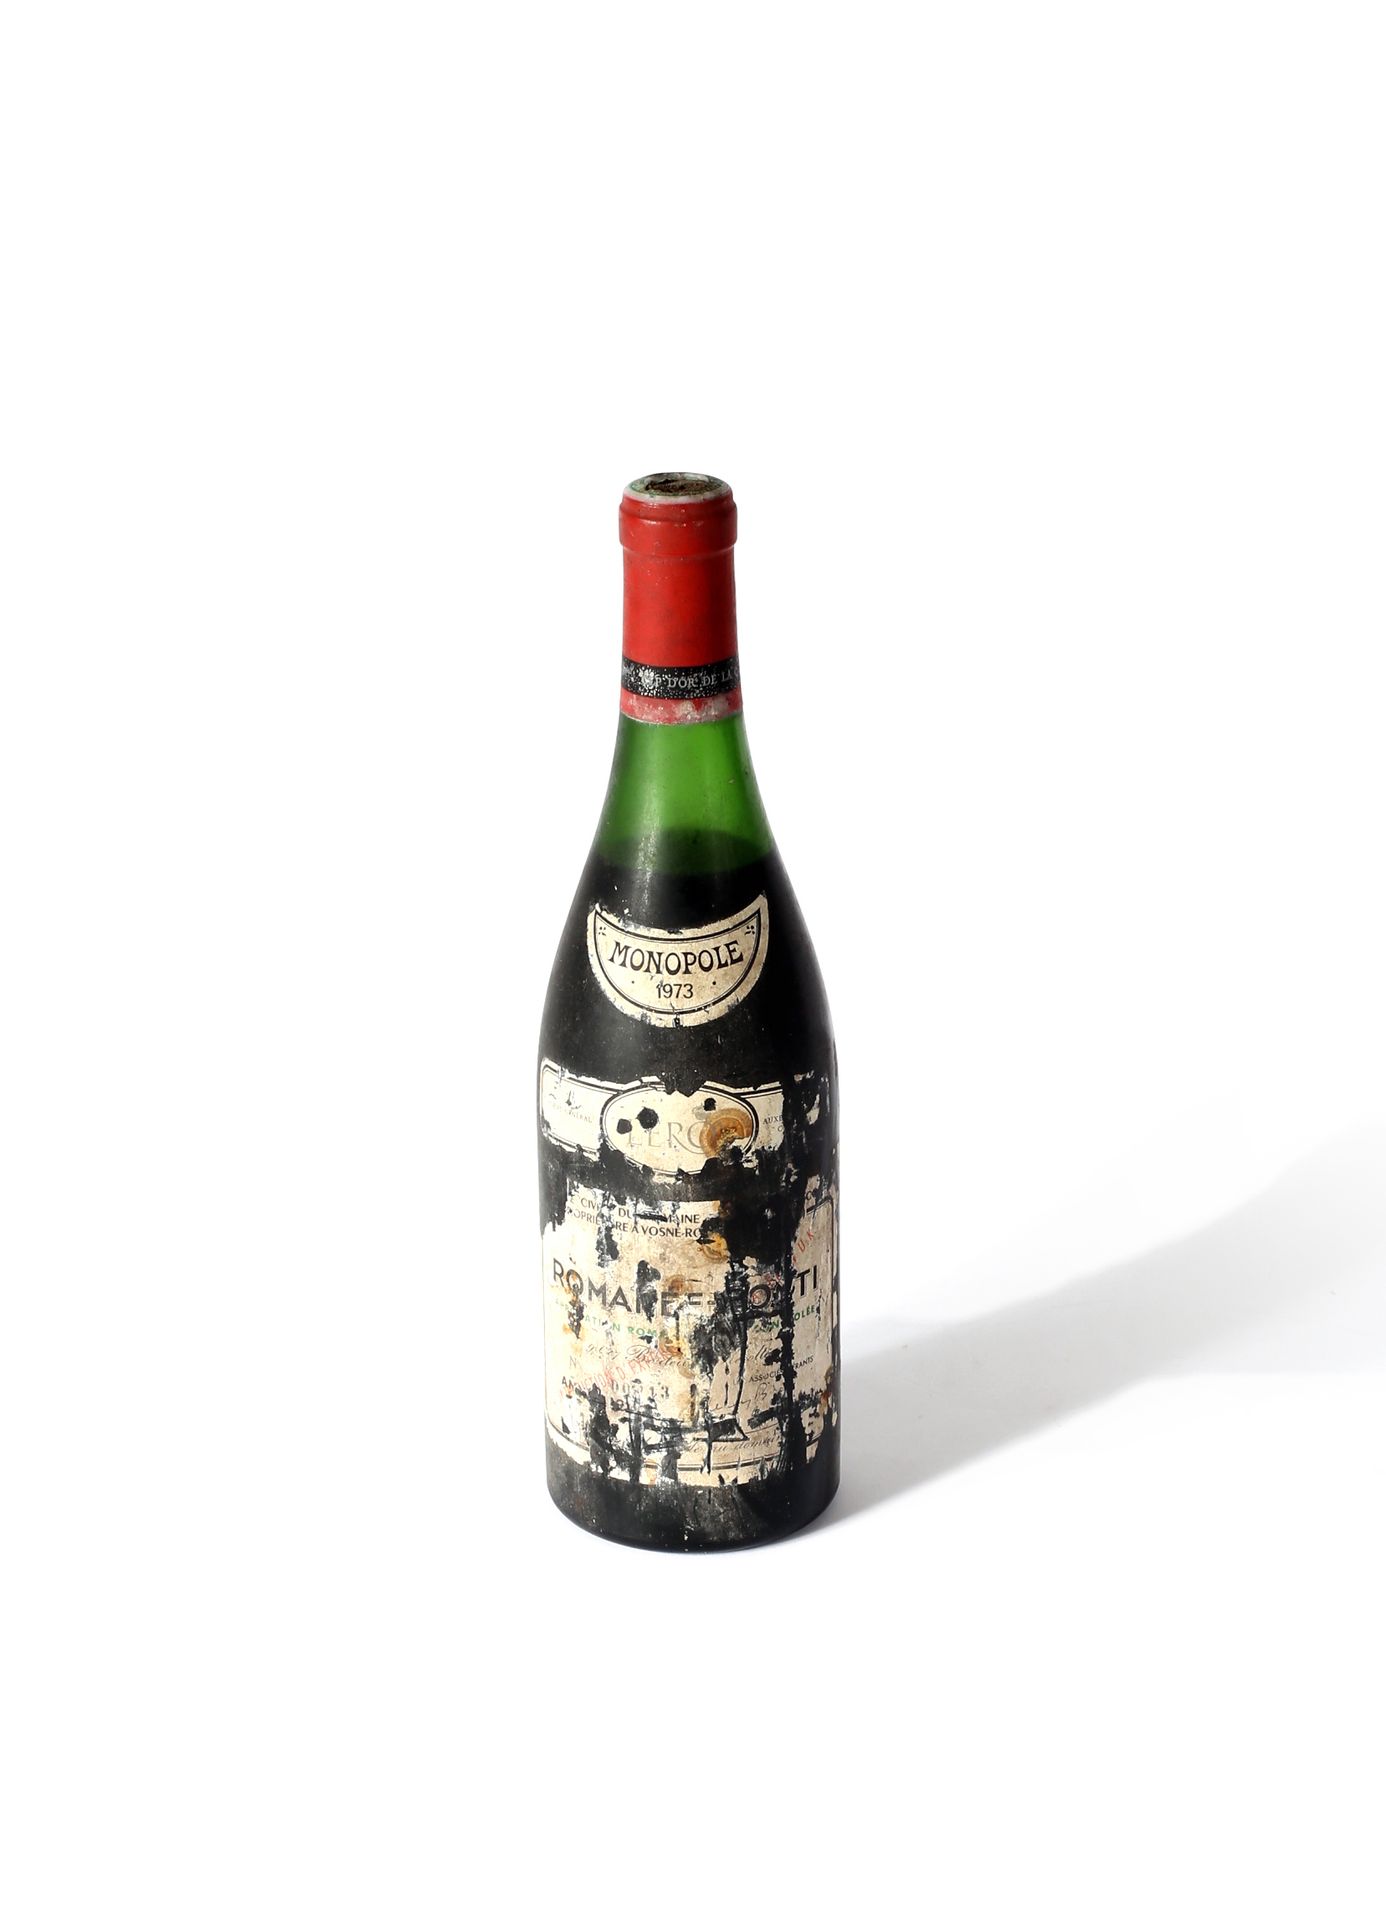 Null 
罗曼尼-康帝1瓶 - 罗曼尼-康帝酒庄。1973.染色和损坏的标签，瓶盖顶部损坏。水平线在4厘米。



我们想告知葡萄酒买家，除了拍卖单之外，他们&hellip;